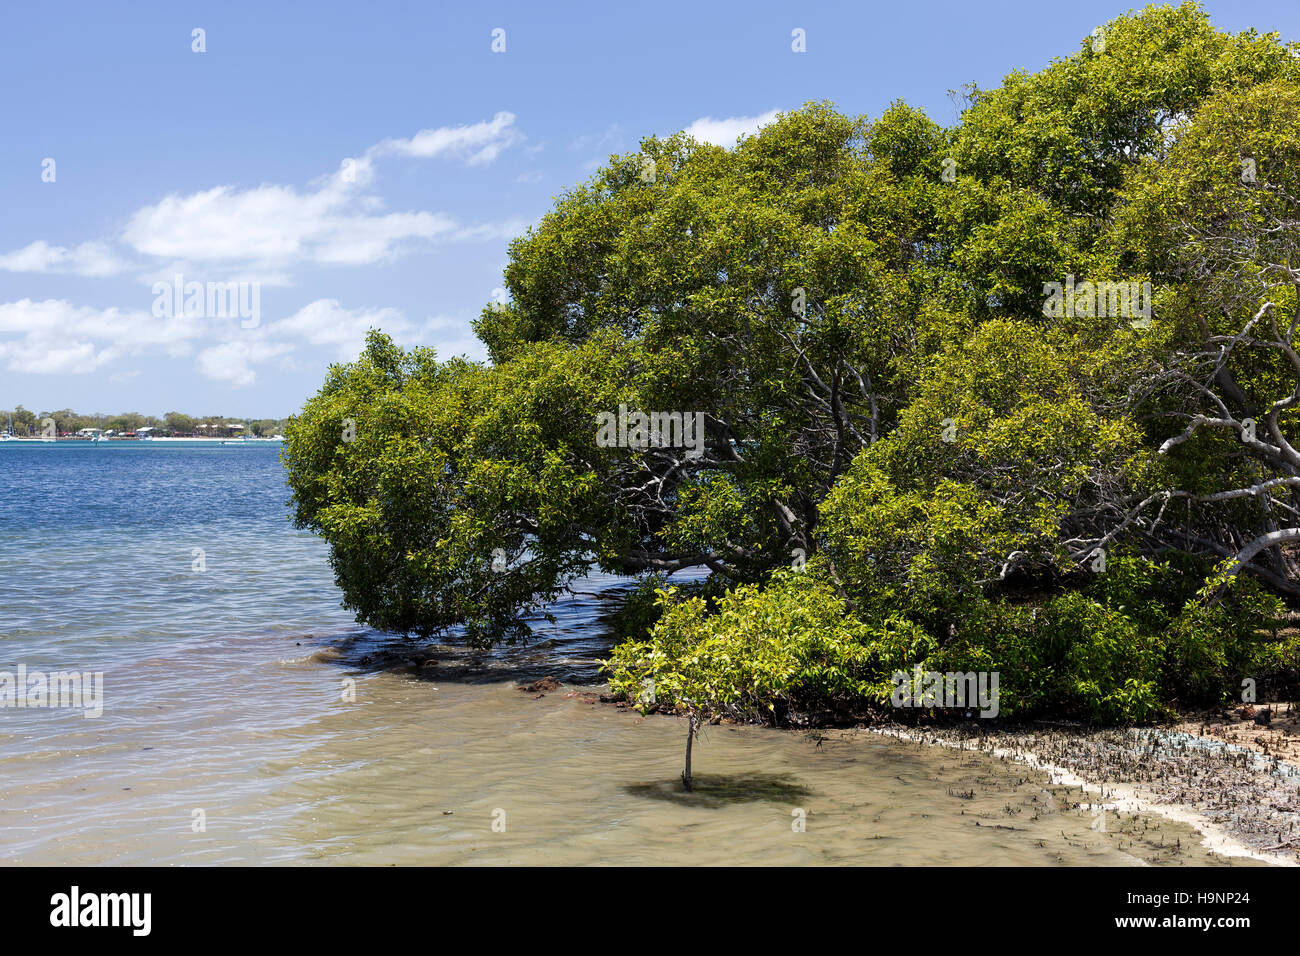 Les mangroves sont tolérantes au sel d'arbustes ou de petits arbres, également appelé halophytes, qui poussent dans l'eau salée ou saumâtre côtière de l'Australie tropicale Banque D'Images